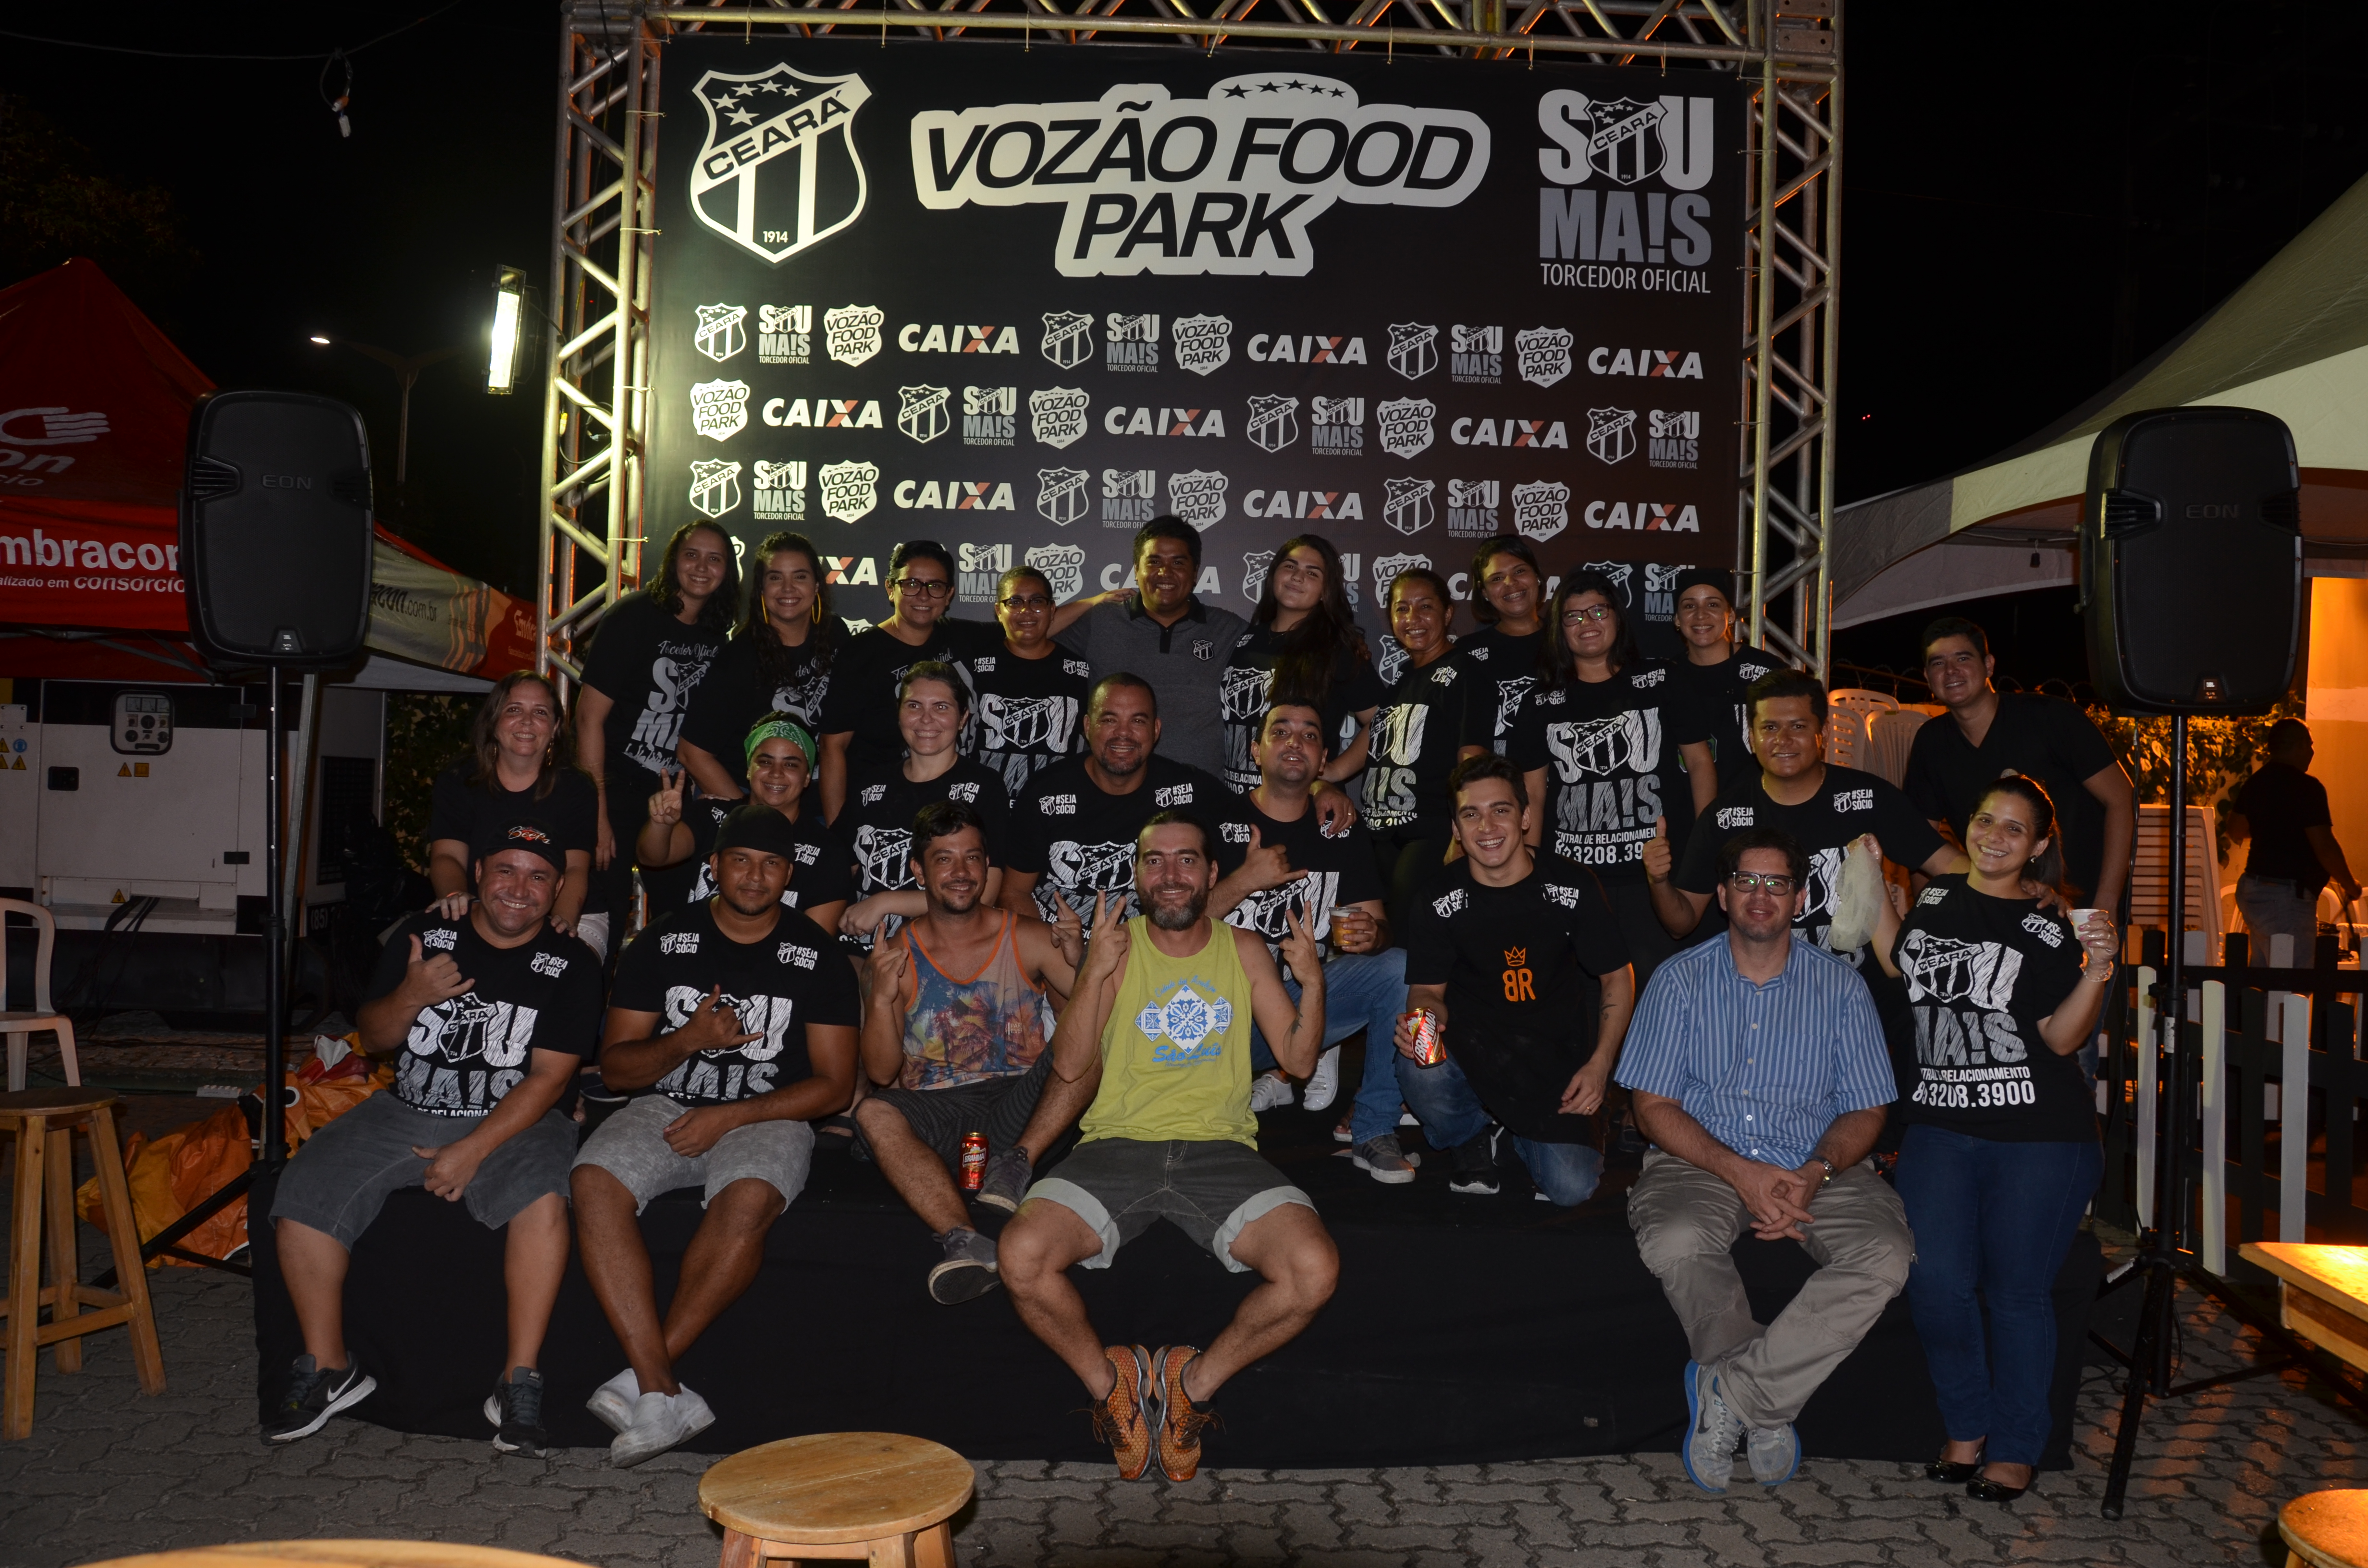 Em sua segunda edição, Vozão Food Park reúne mais de 6000 pessoas